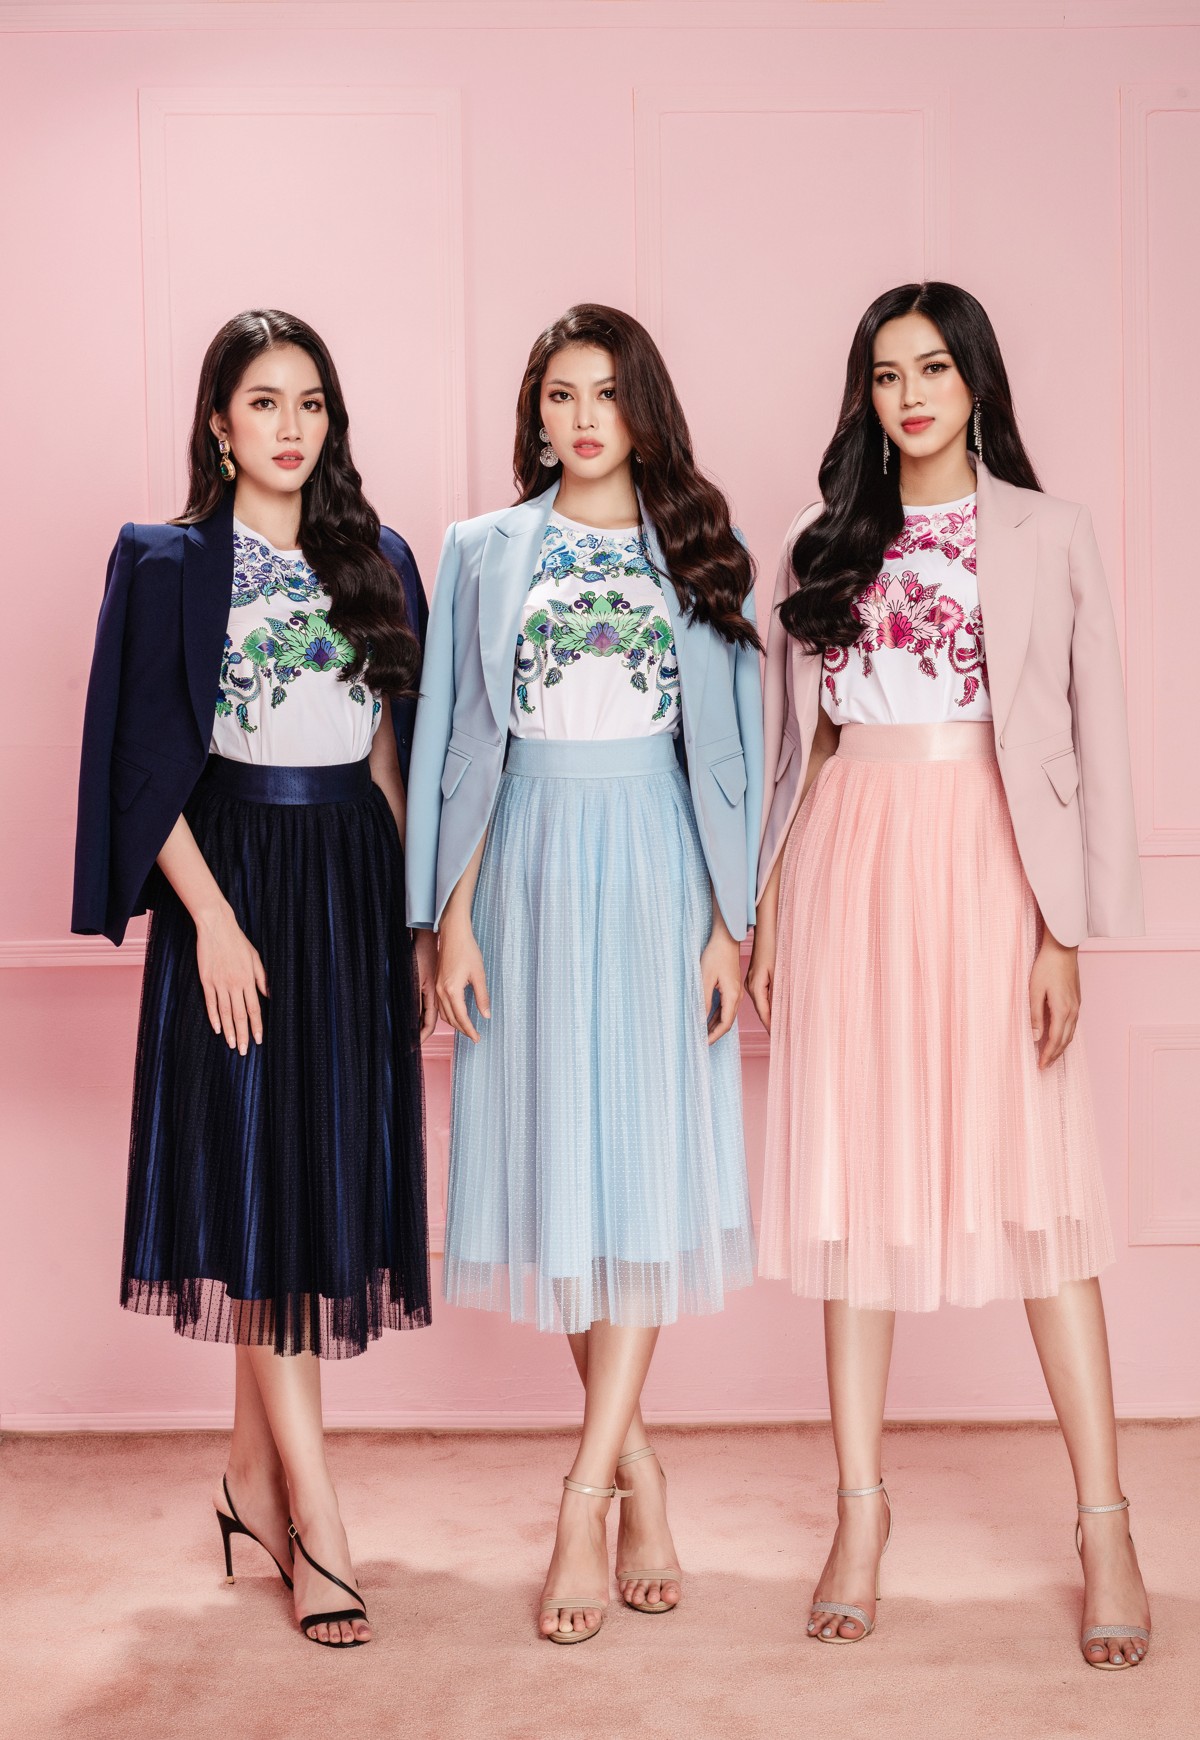 Hoa hậu Việt Nam 2020 Đỗ Thị Hà cùng 2 Á hậu Phương Anh Ngọc Thảo cũng cực kỳ yêu thích những thiết kế ấn tượng Top 3 Hoa hậu Việt Nam 2020 bắt nhịp xu hướng với họa tiết Paisley từ NEVA